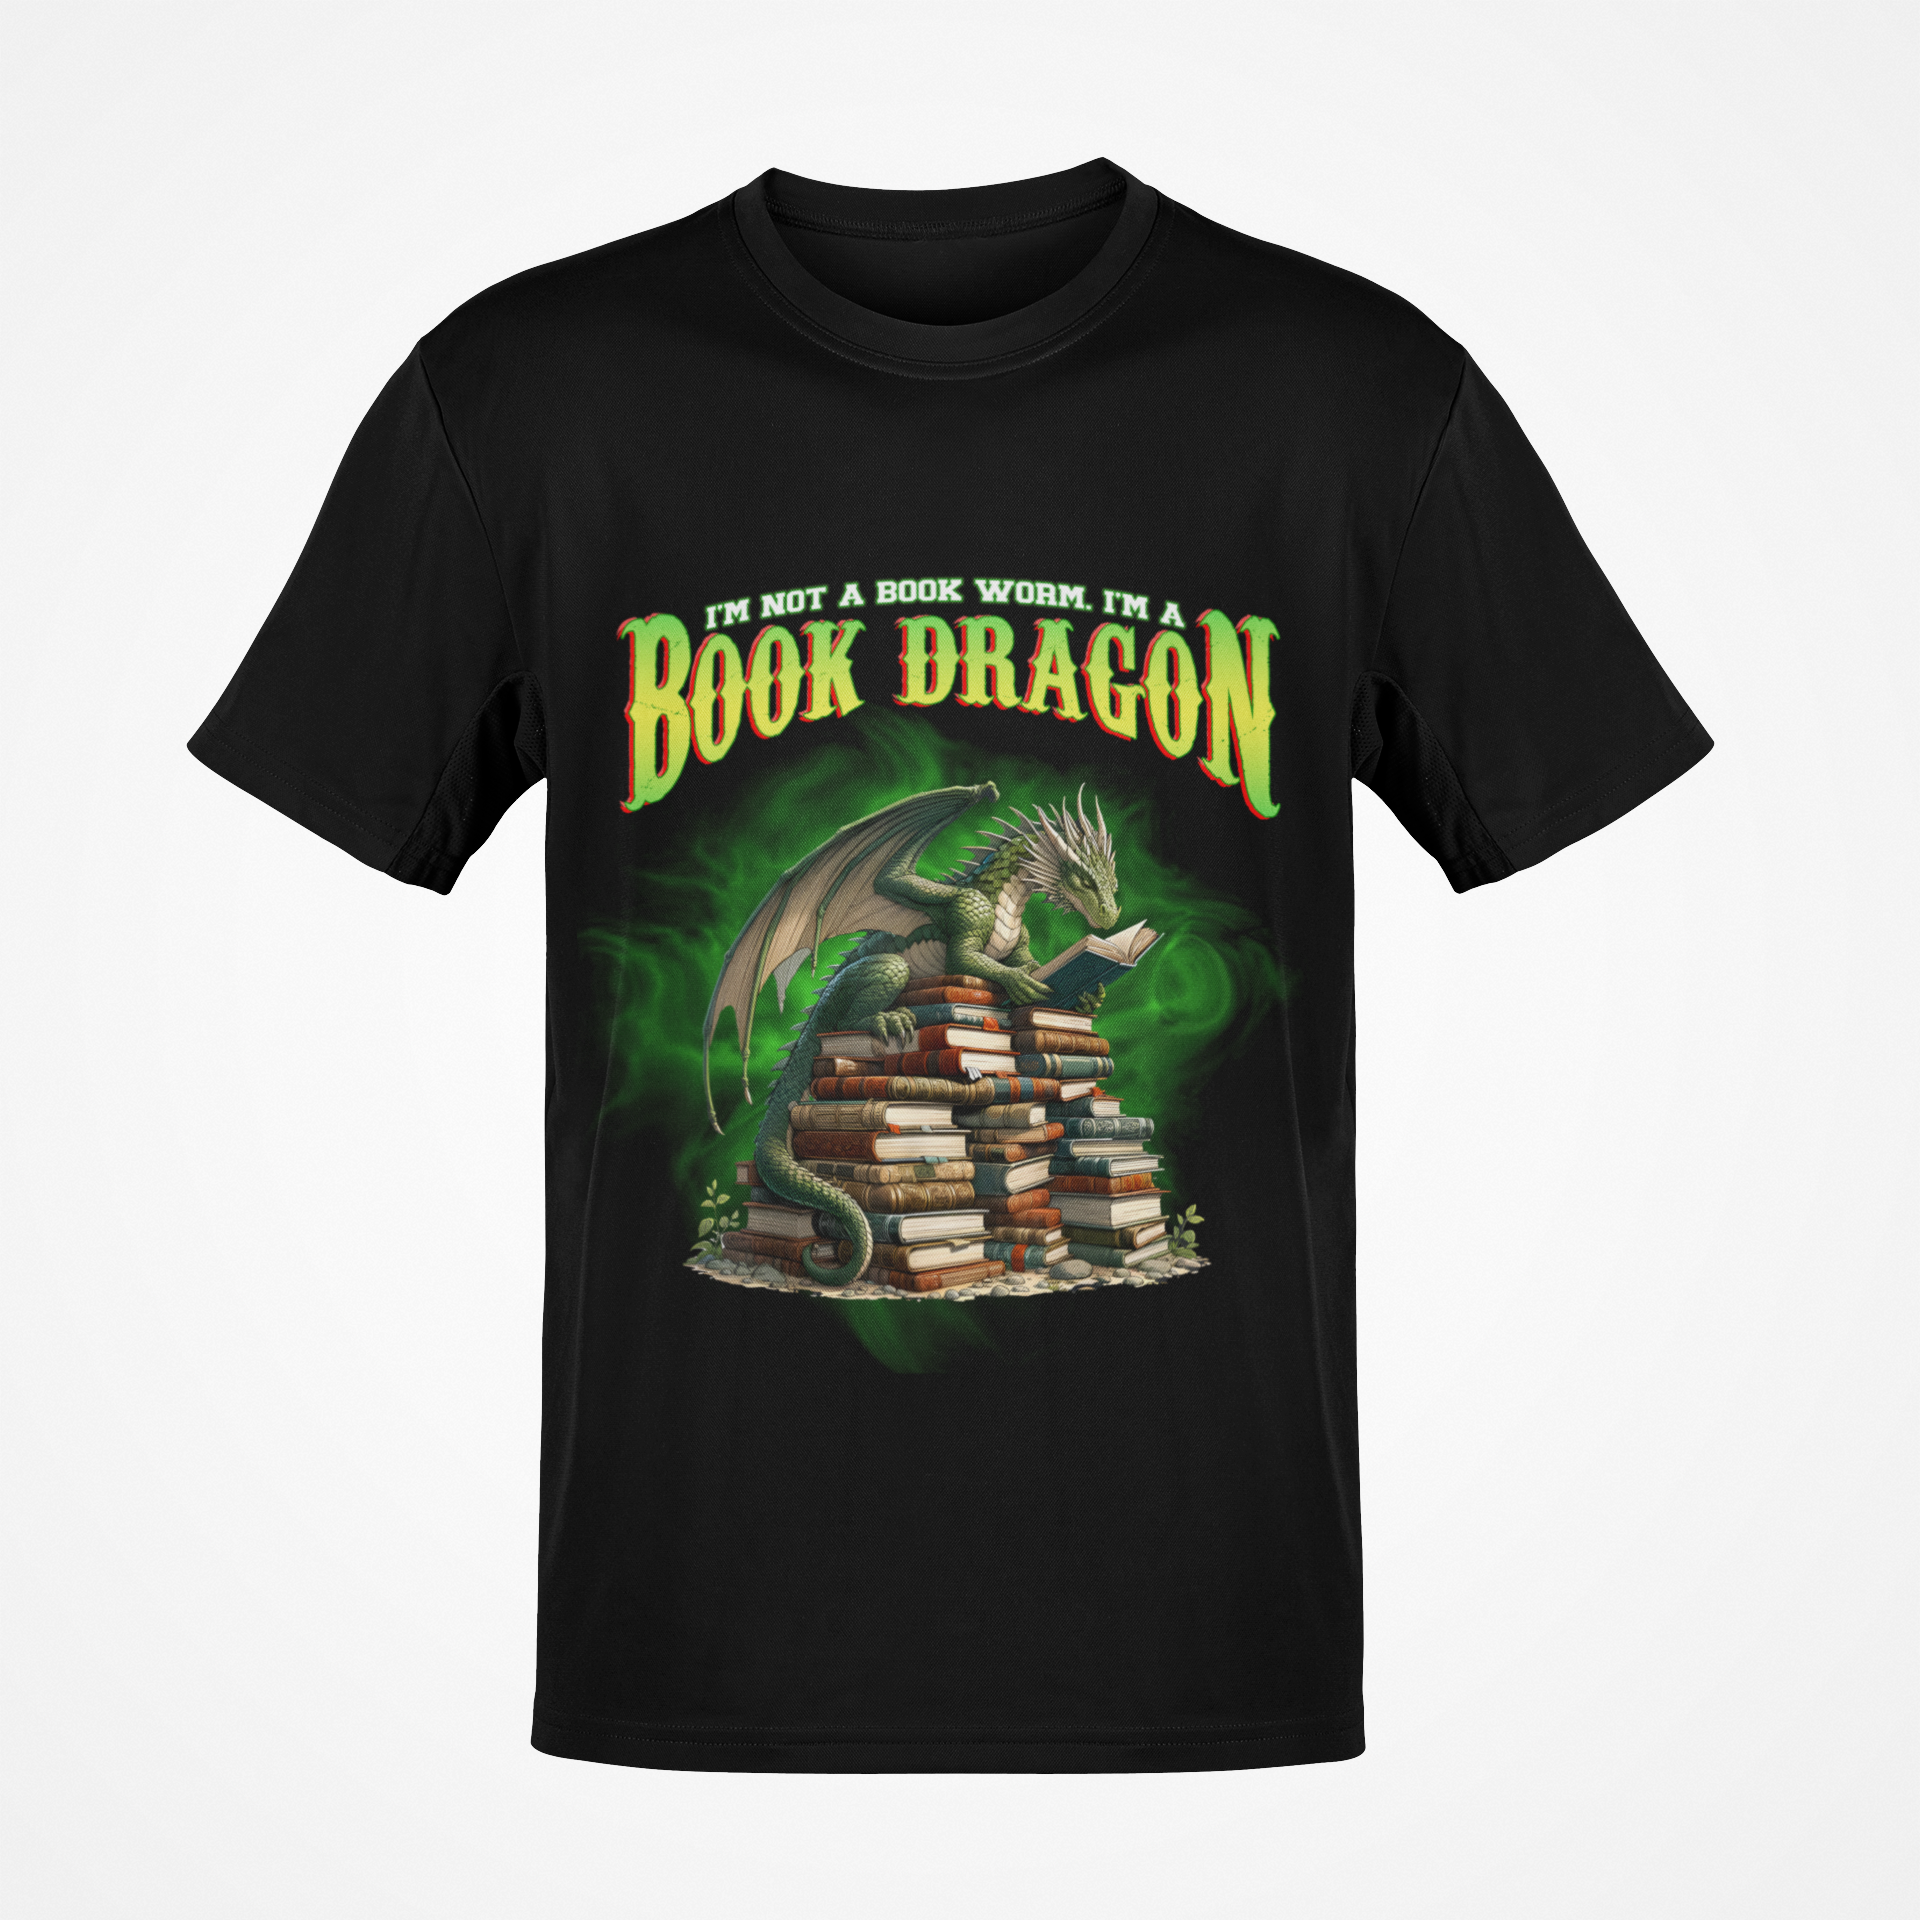 I'm Not A Bookworm, I'm A Book Dragon T-shirt